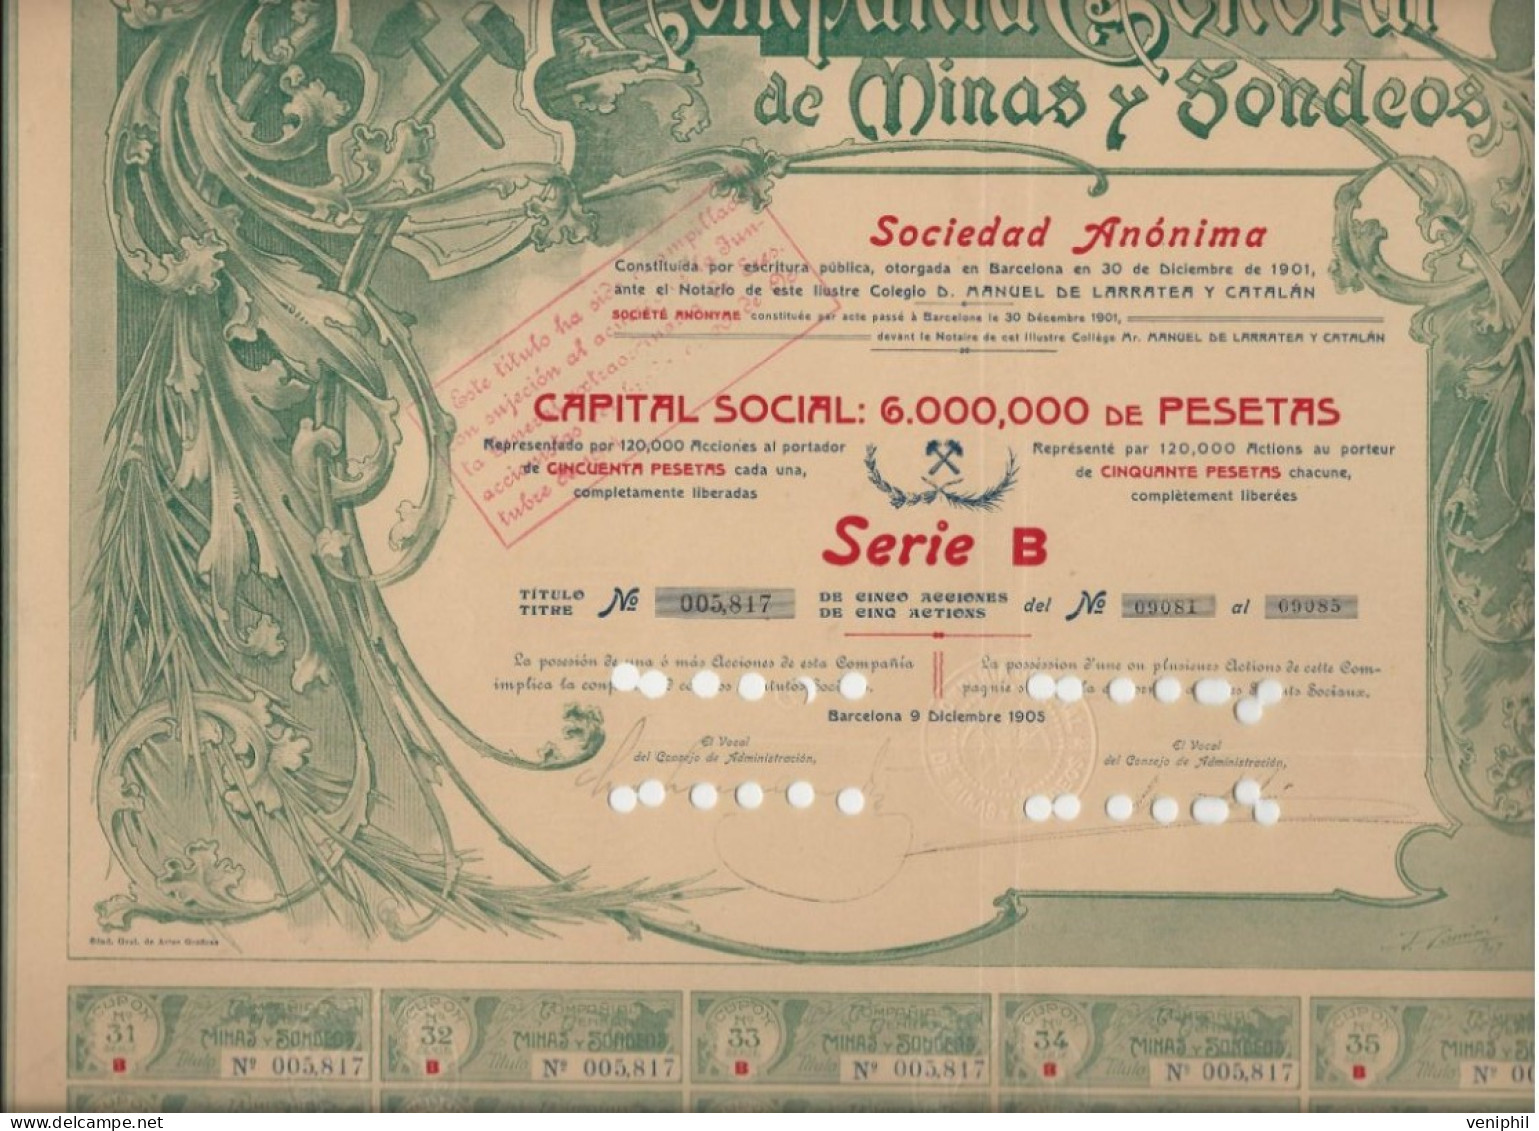 COMPAGNIE GENERAL DES MINES Y SODEOS - TITRE DE 5 ACTIONS DE 50 PSETAS -1905 BARCELONE - Bergbau